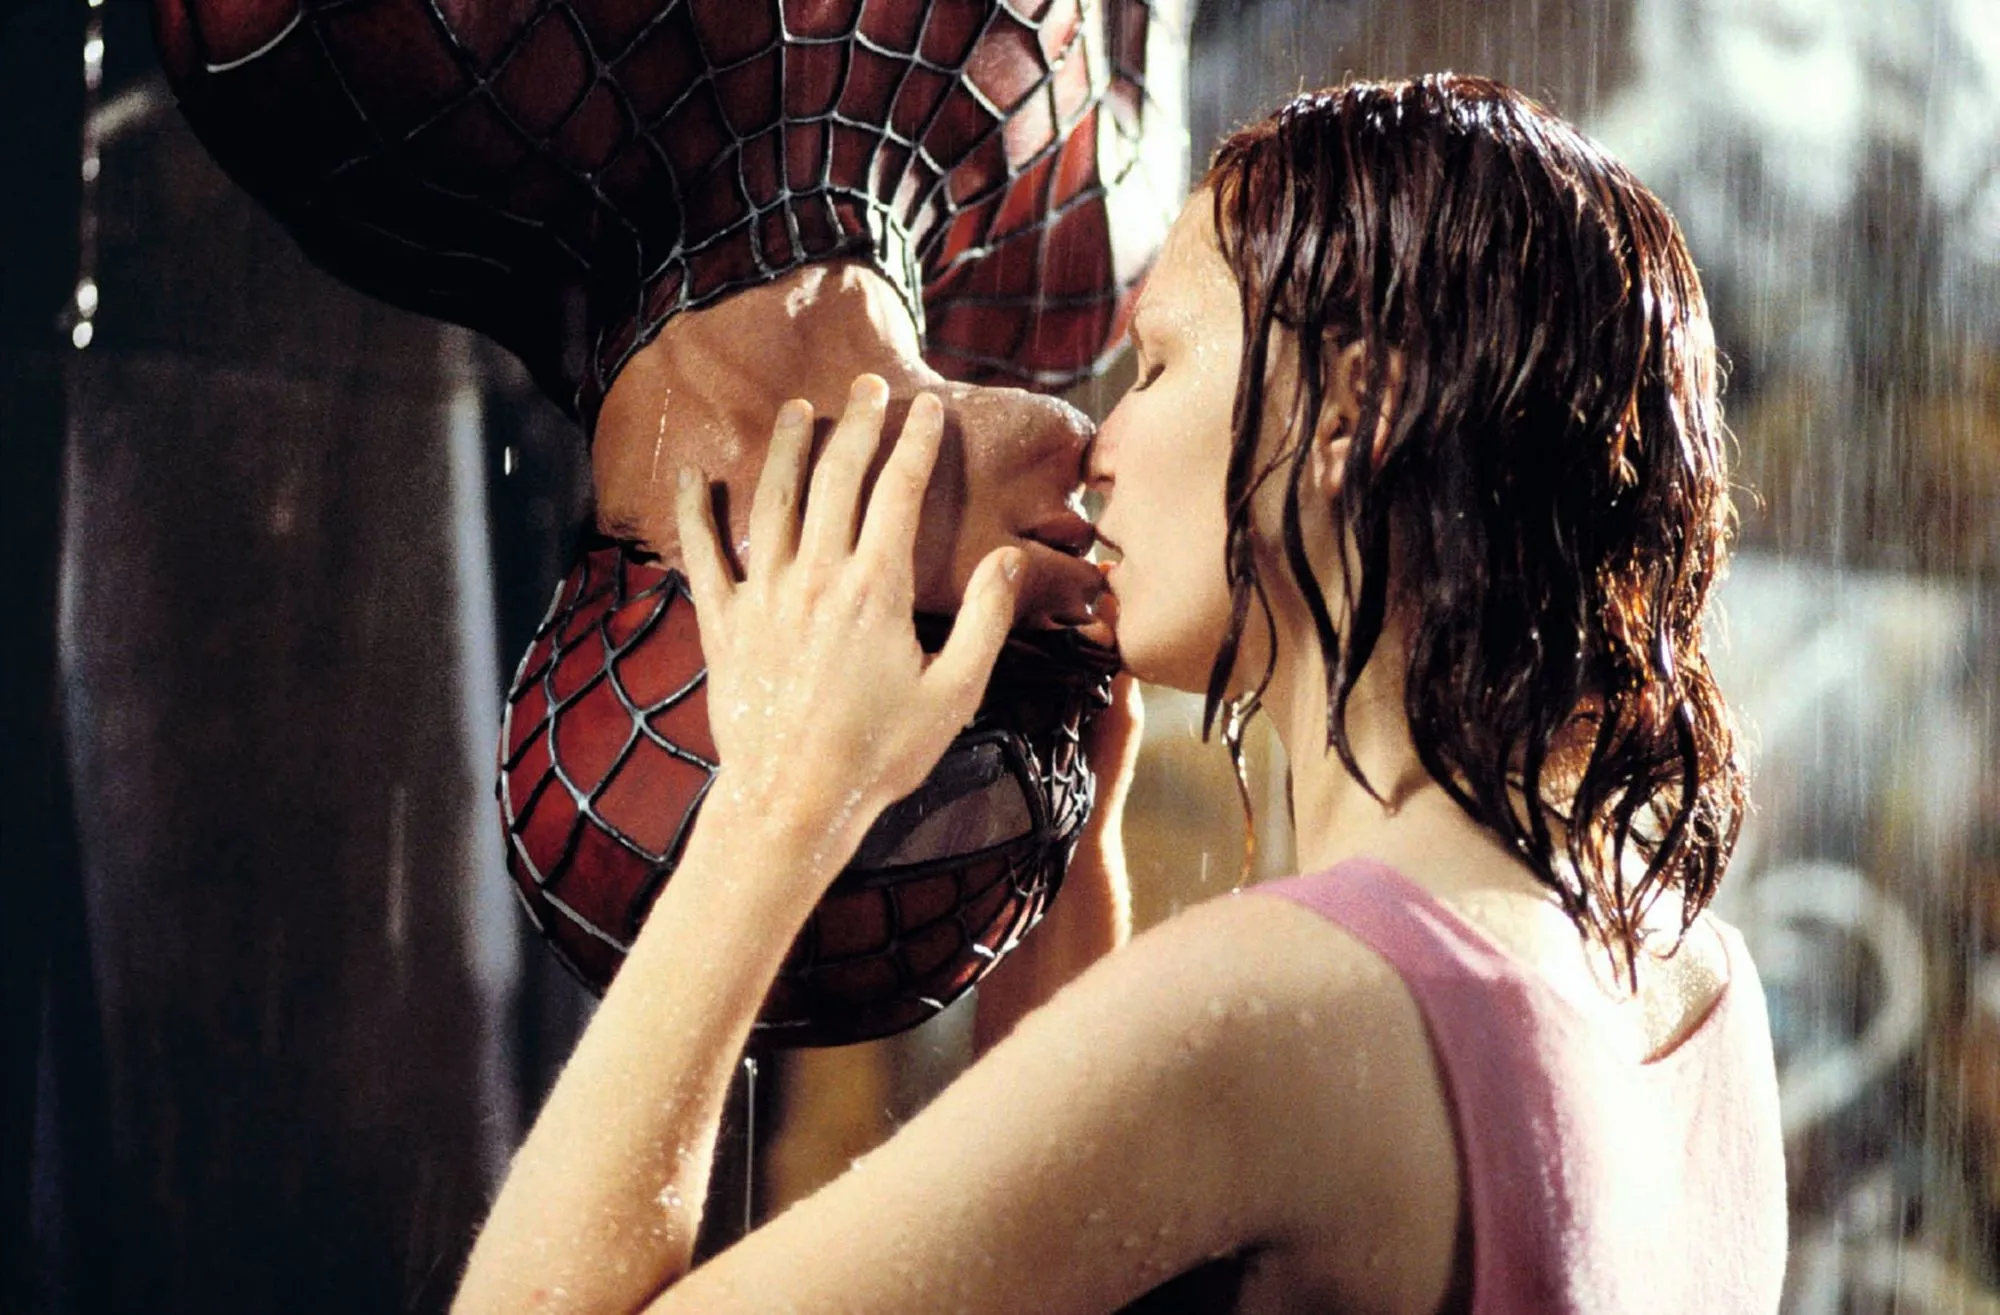 Le baiser, une activité érotique. Image tirée du film Spiderman.